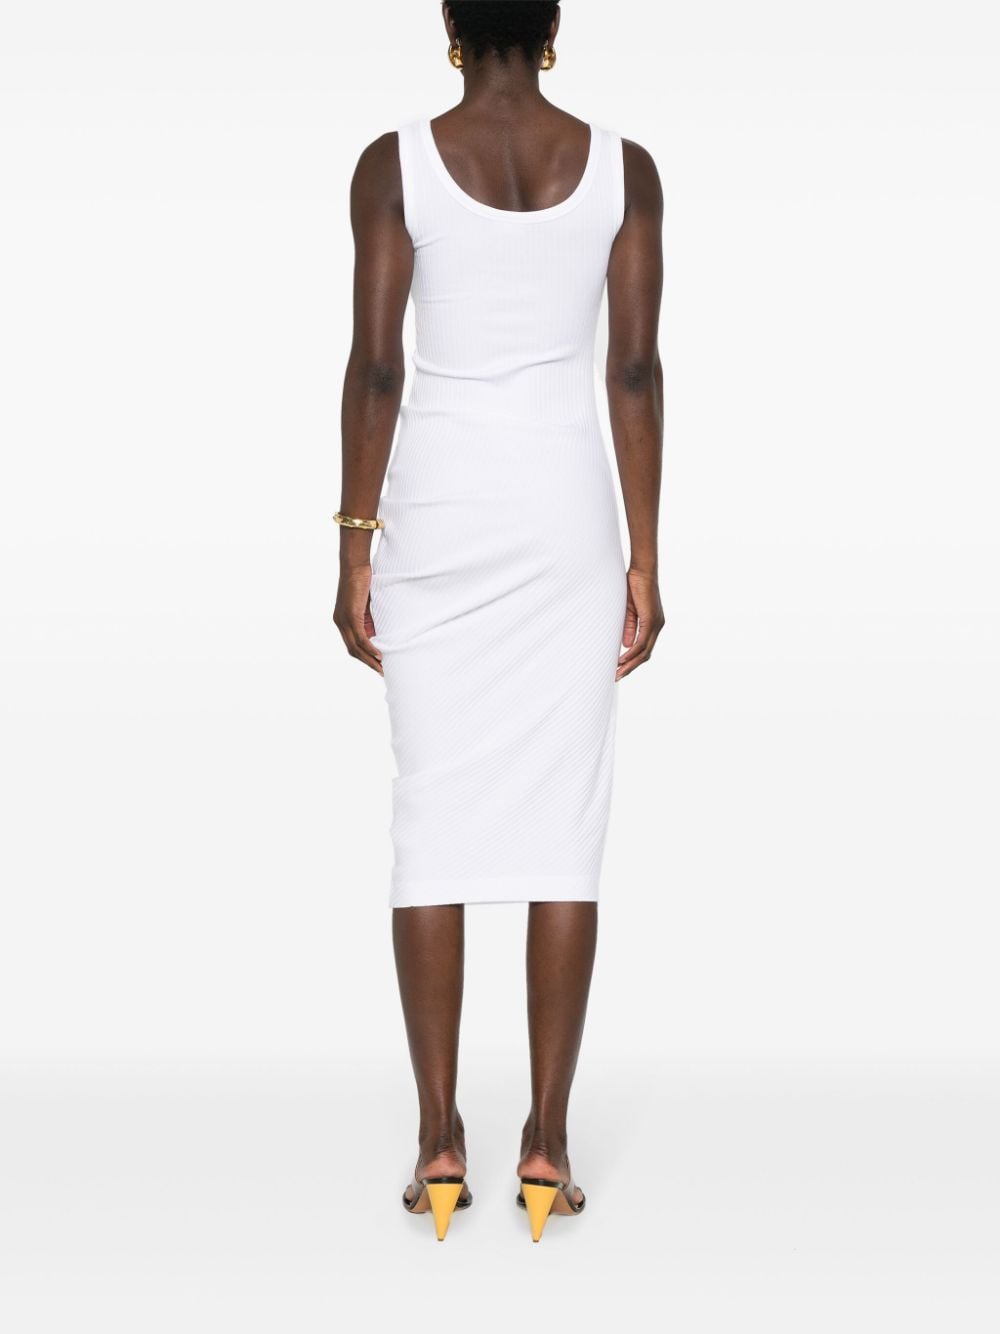 White bodycon sleevless dress